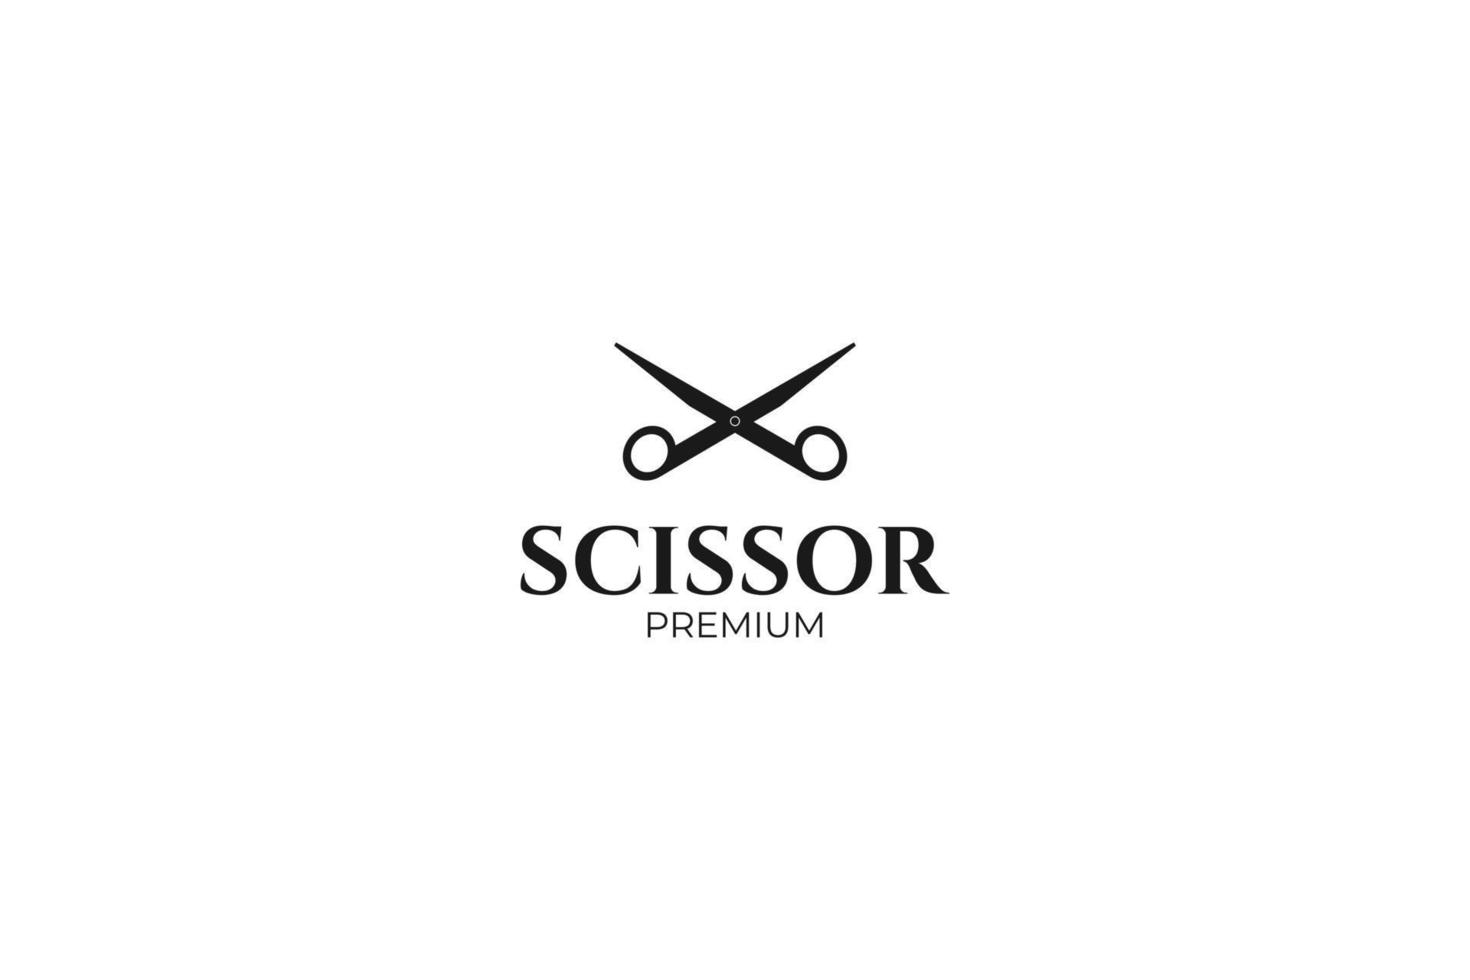 Scissor icon logo design vector template illustration